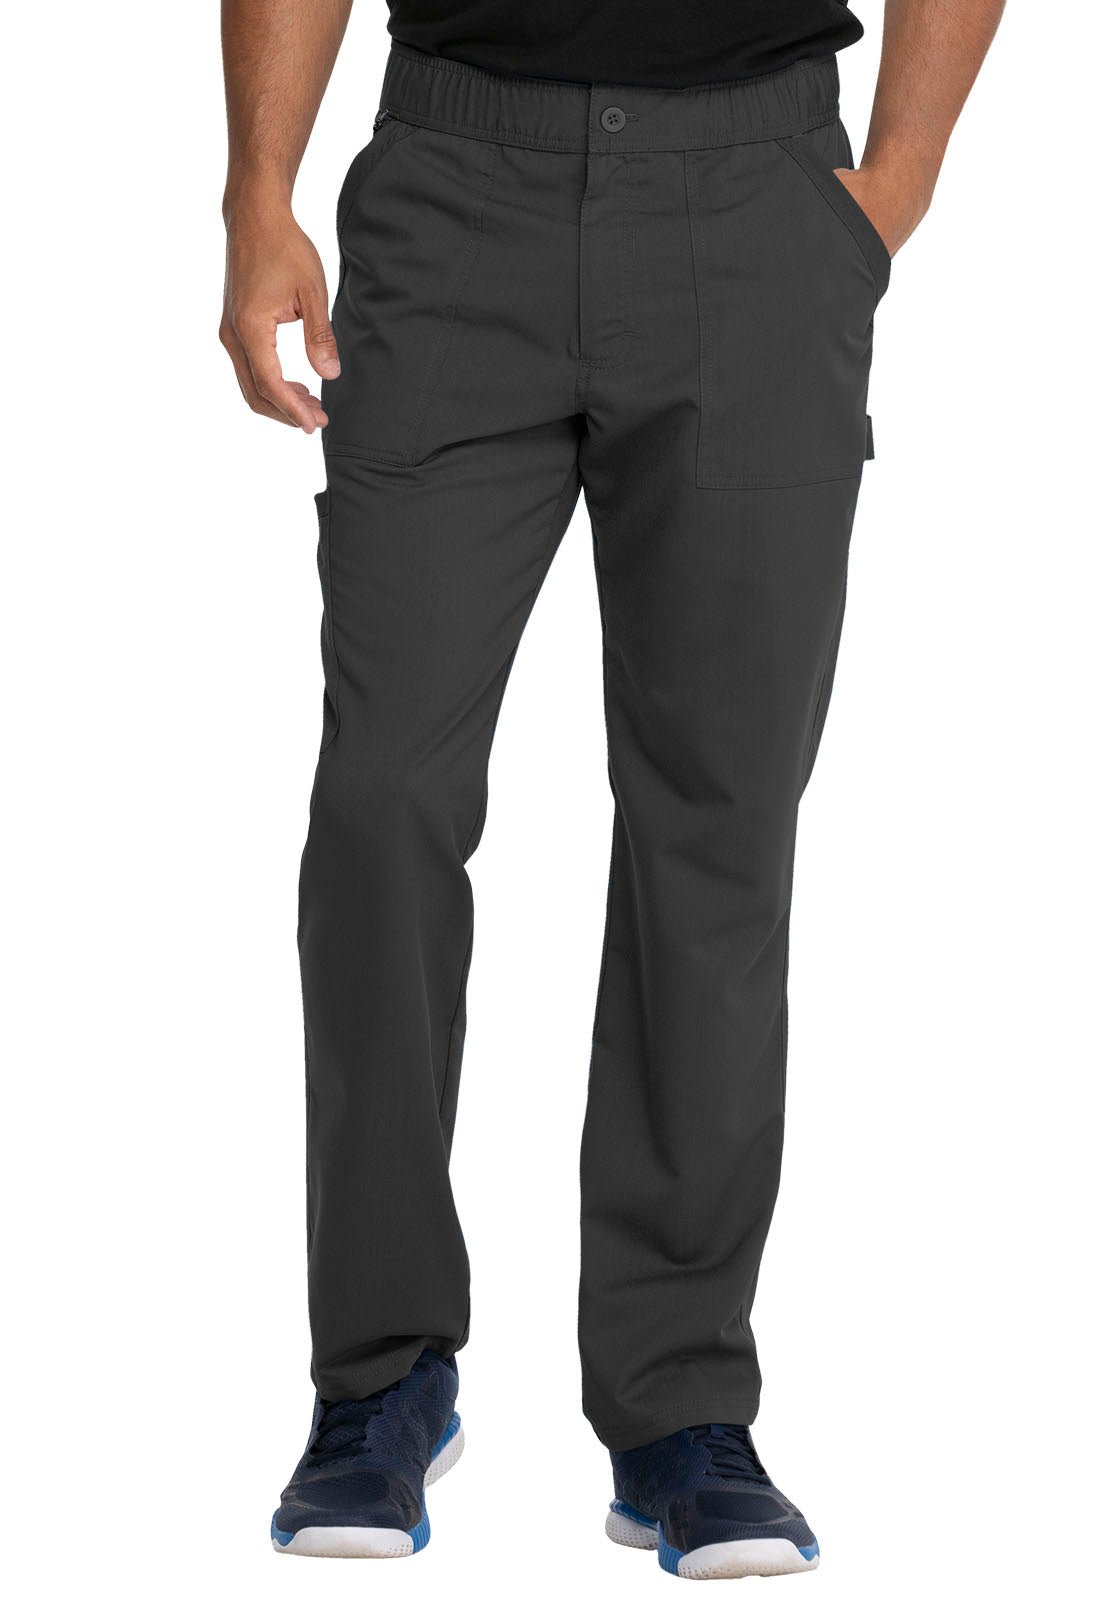 Dickies Balance Men's Scrub Straight Leg Pant DK220 Black, Navy, Pewter, Royal - Scrubs Select